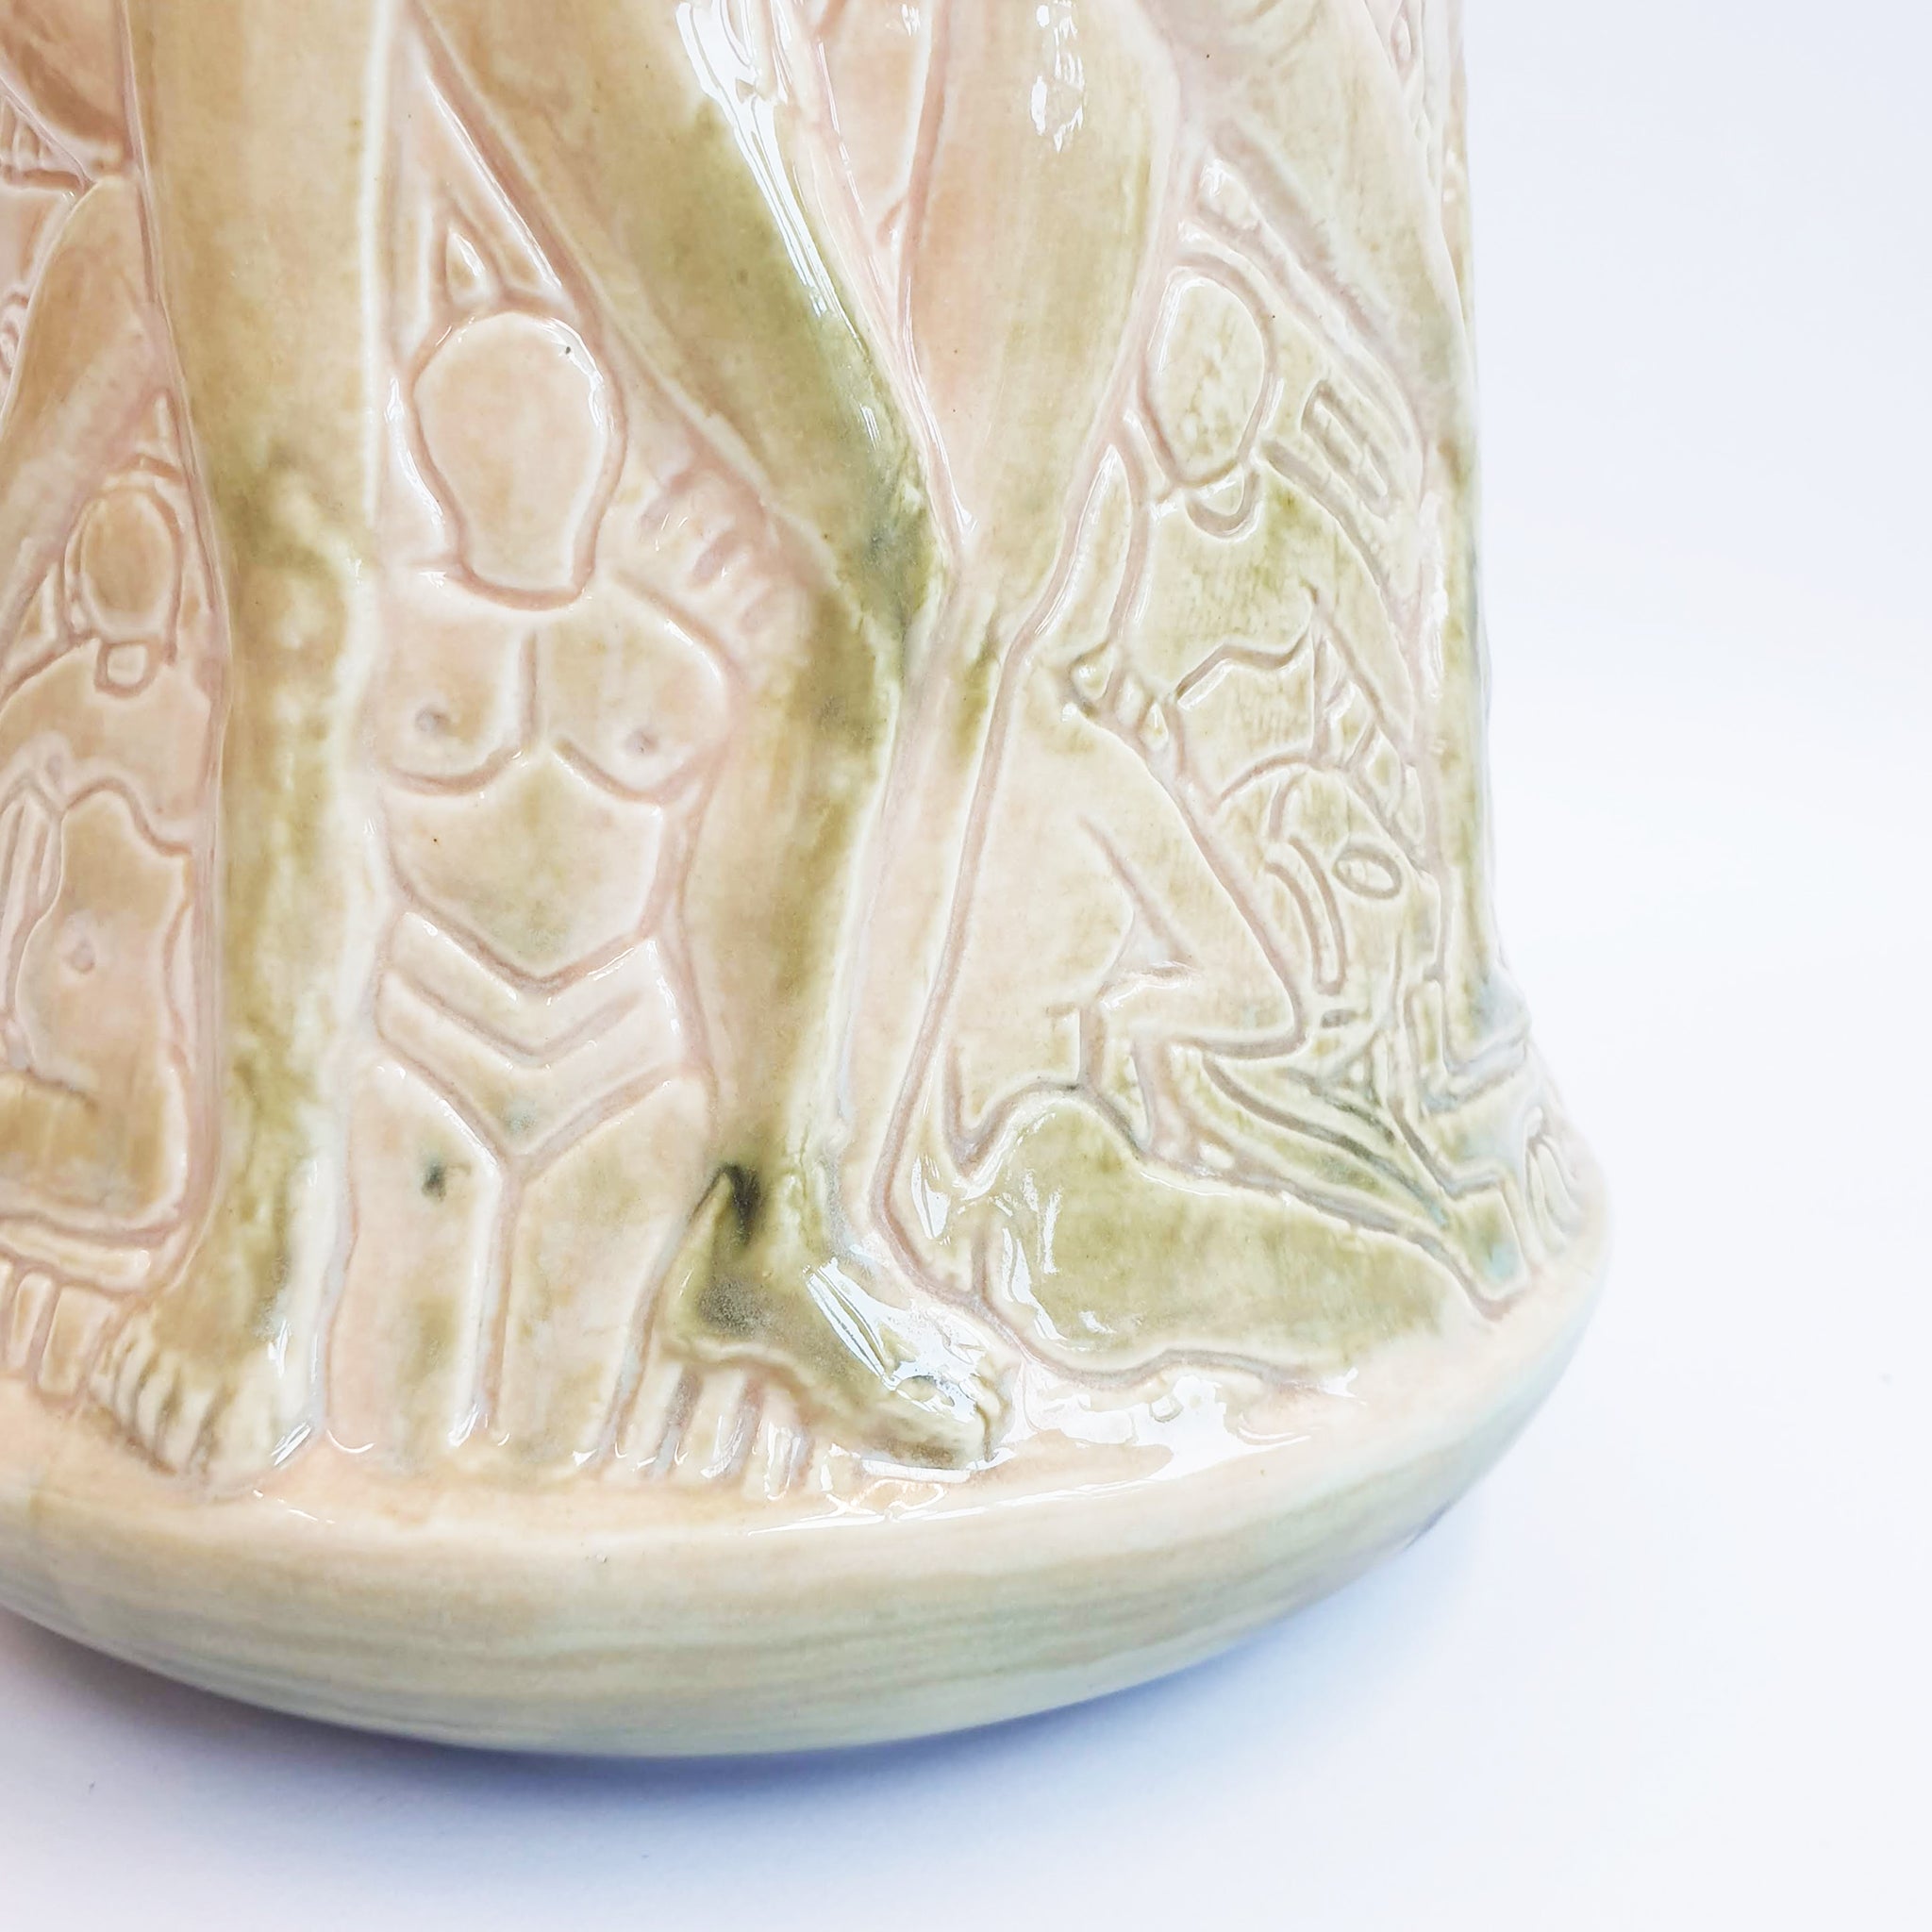 Large vintage ceramic vase